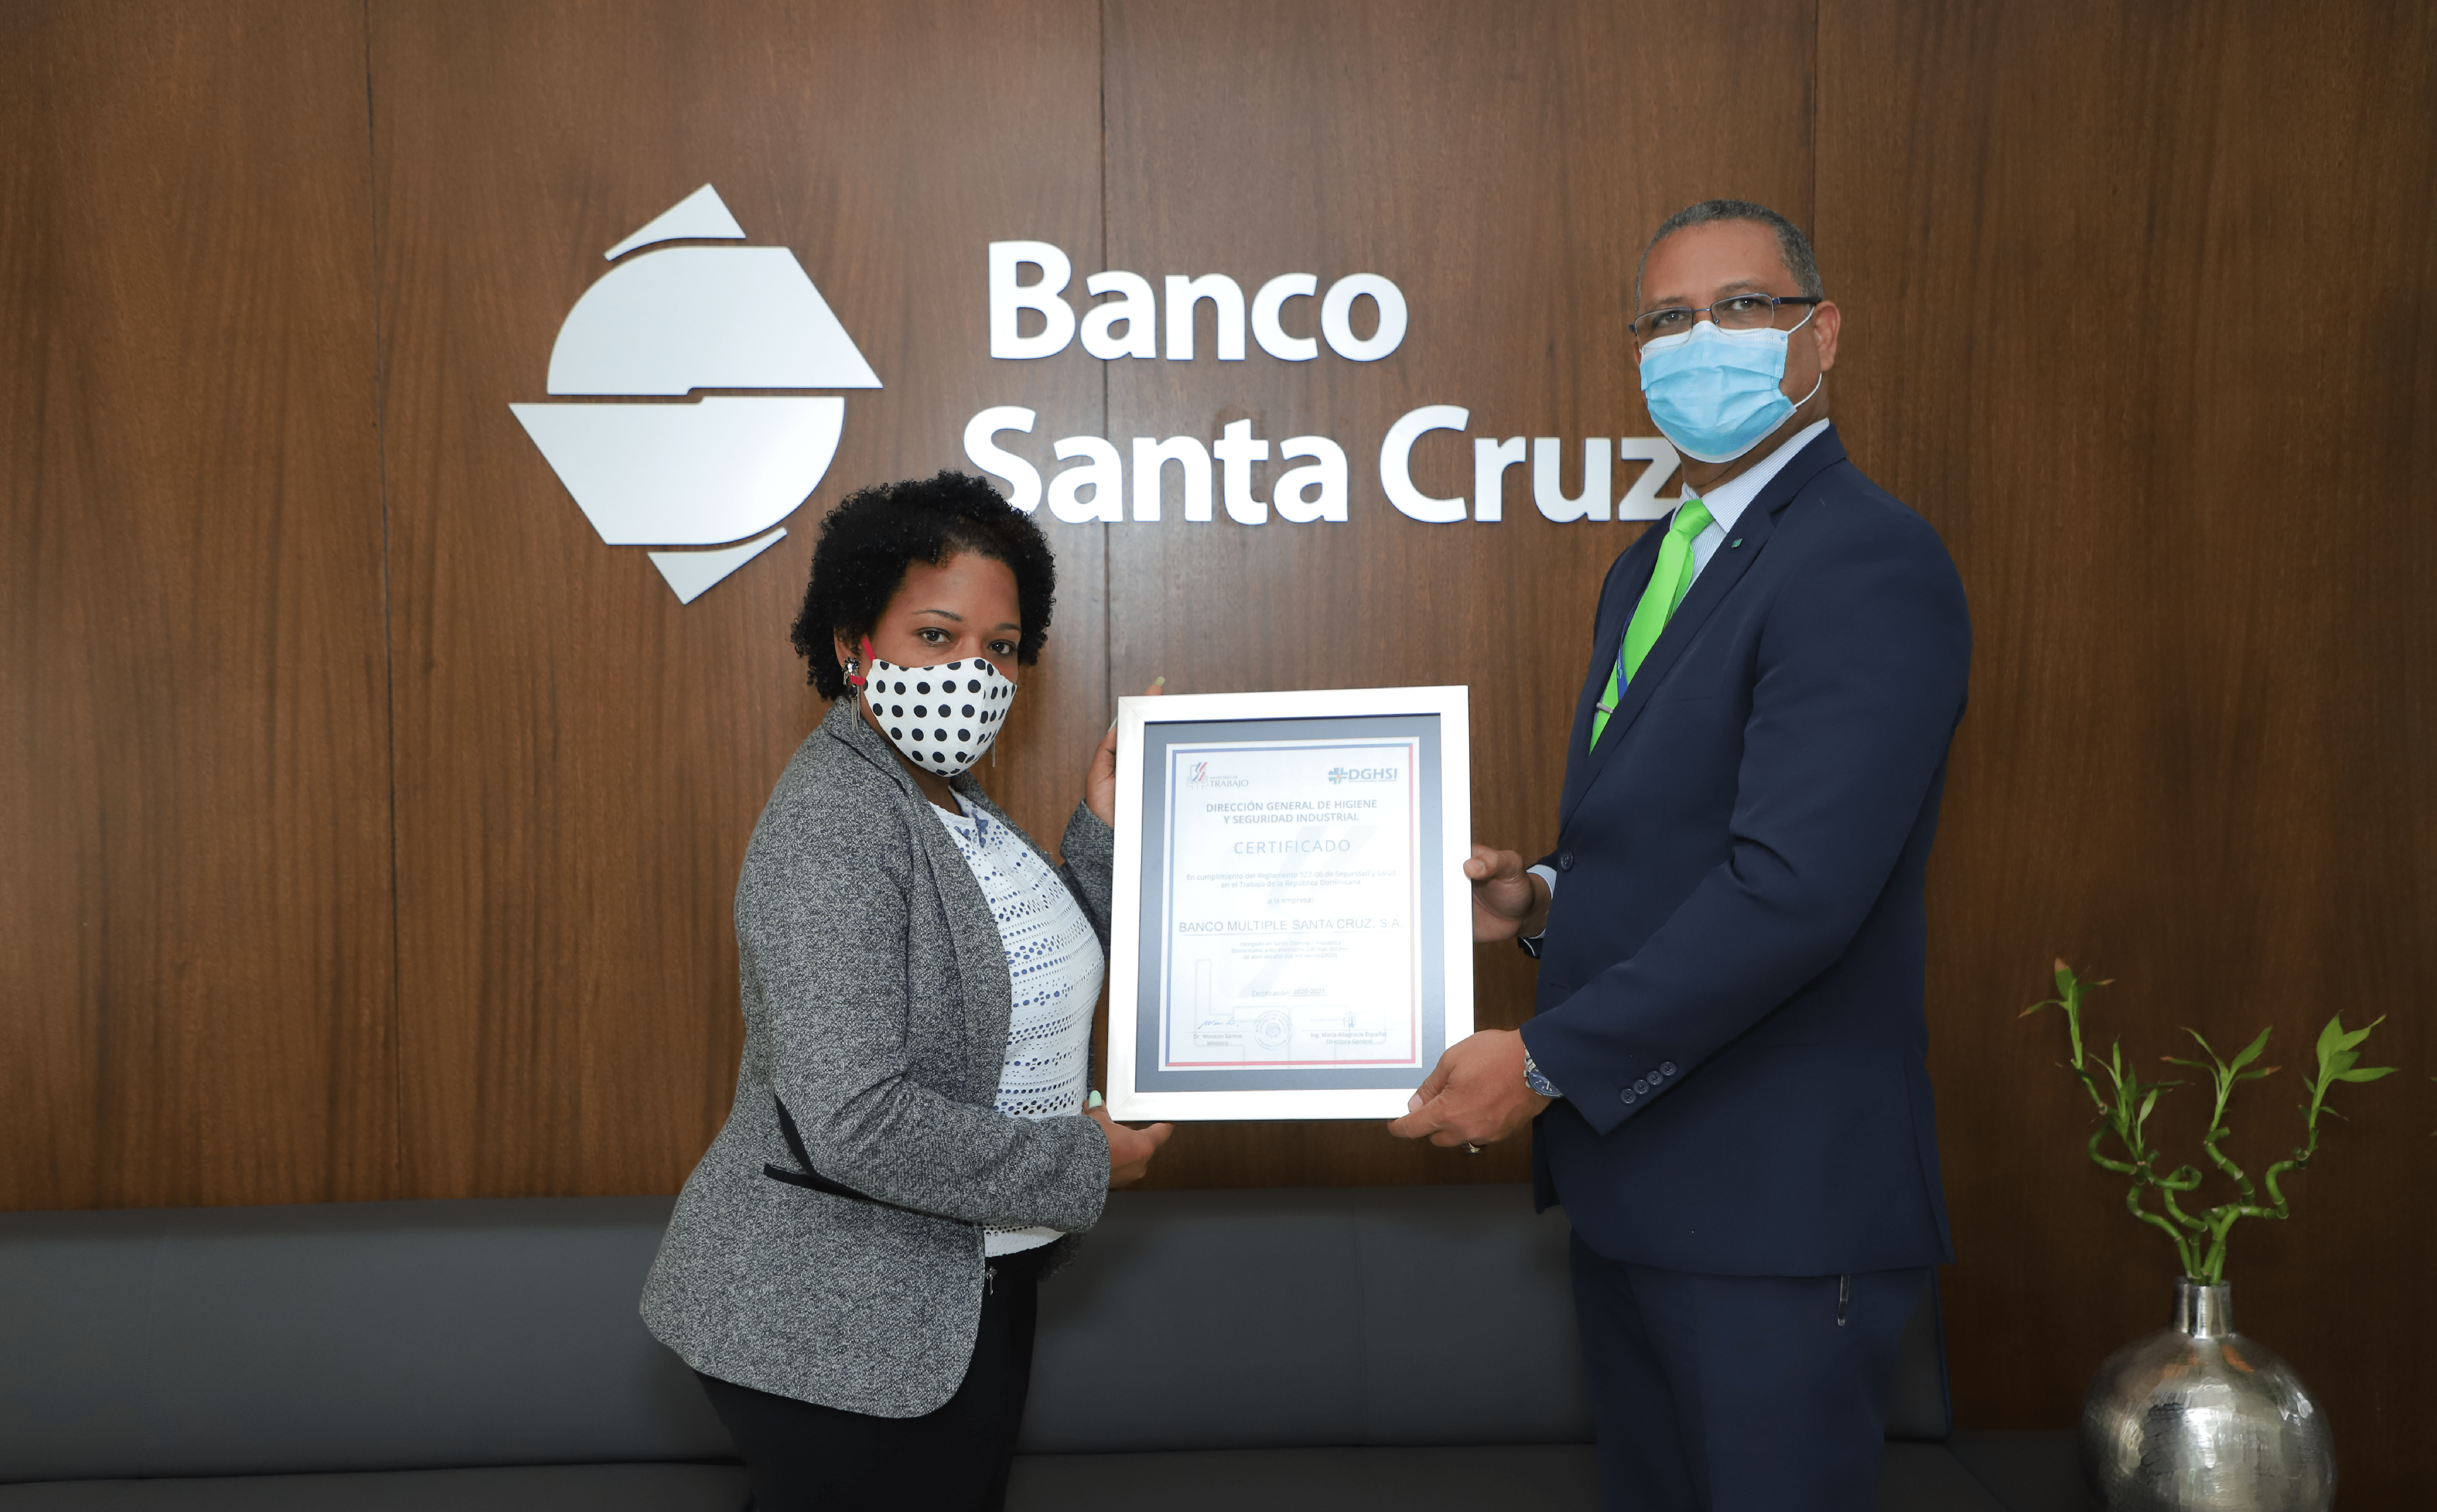 Banco Santa Cruz recibe certificado de seguridad y salud en el trabajo